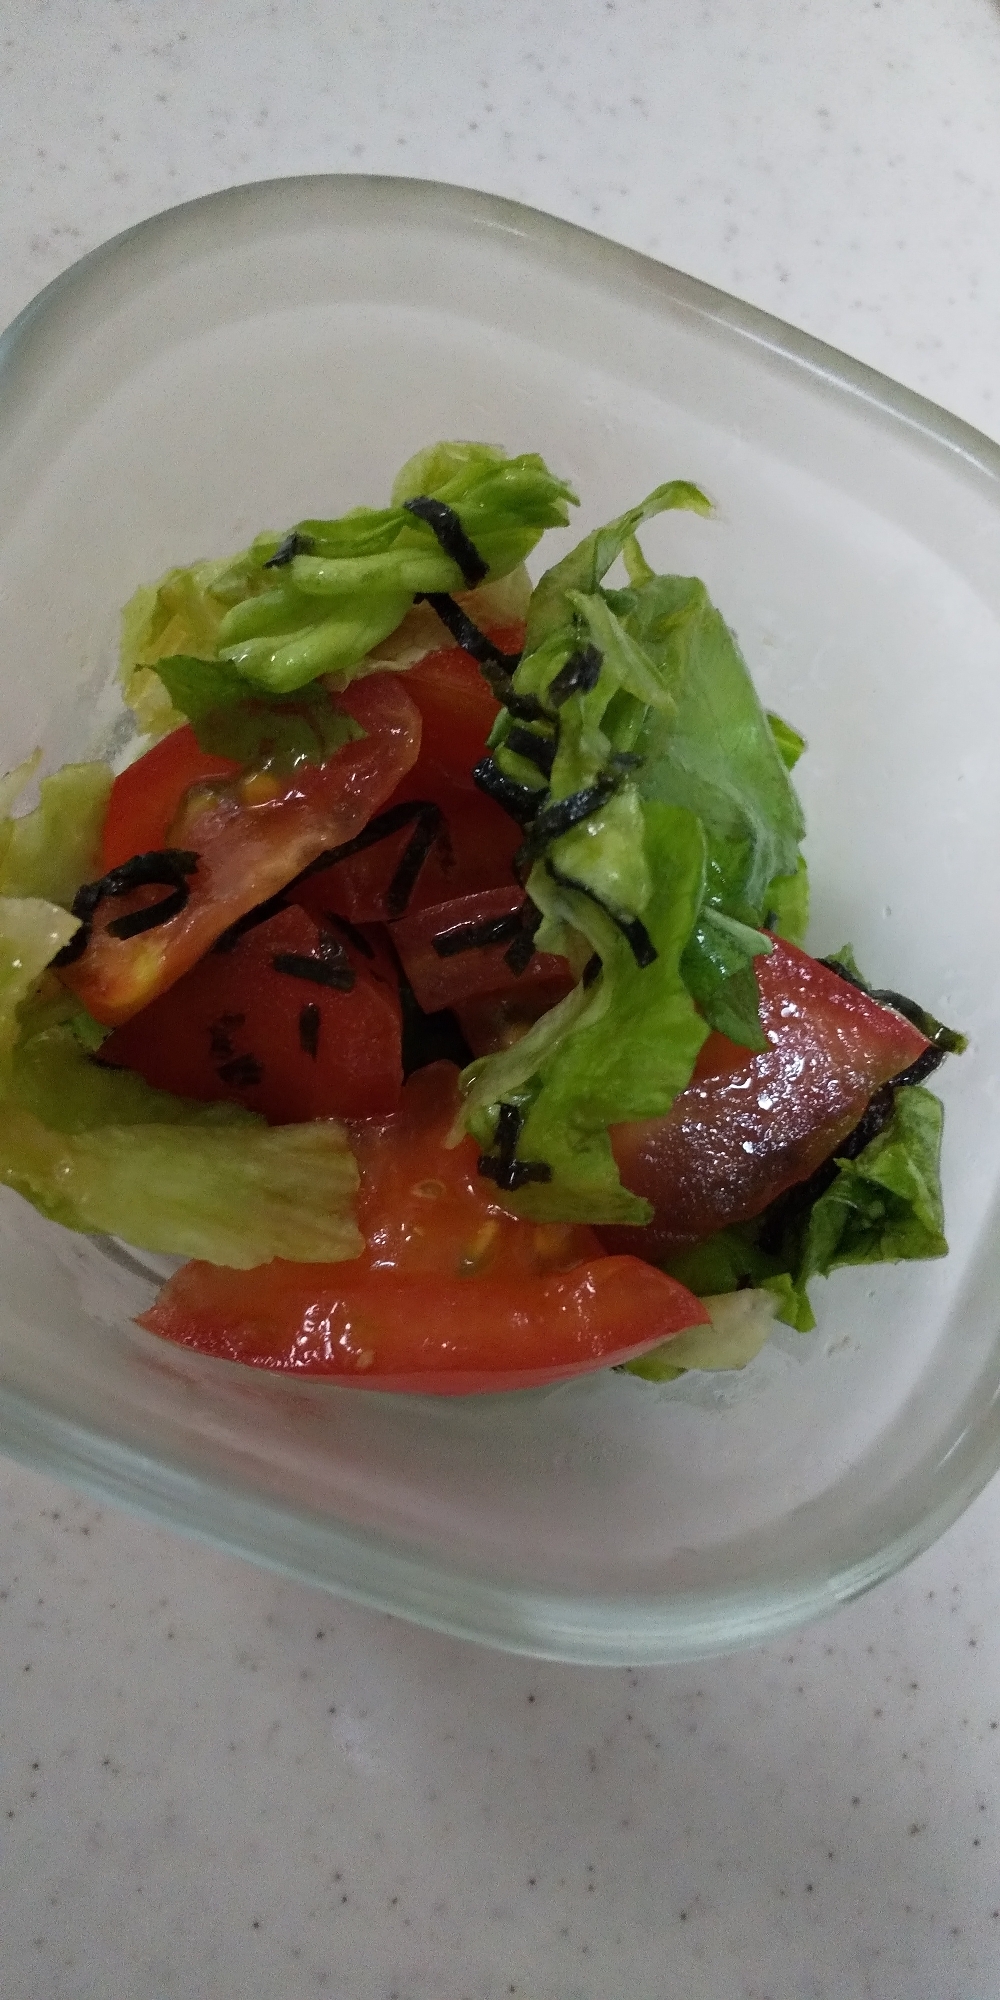 「トマト」とリーフレタスと海苔のサラダ☆